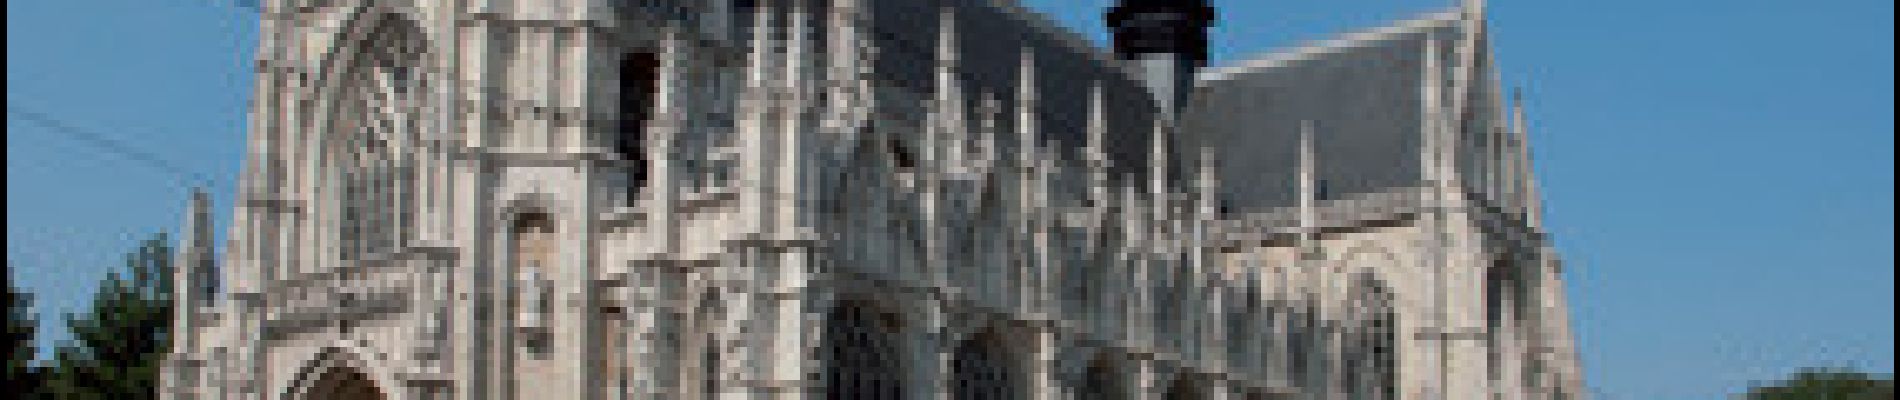 Punto di interesse Bruxelles - Église Notre-Dame des Victoires au Sablon - Photo